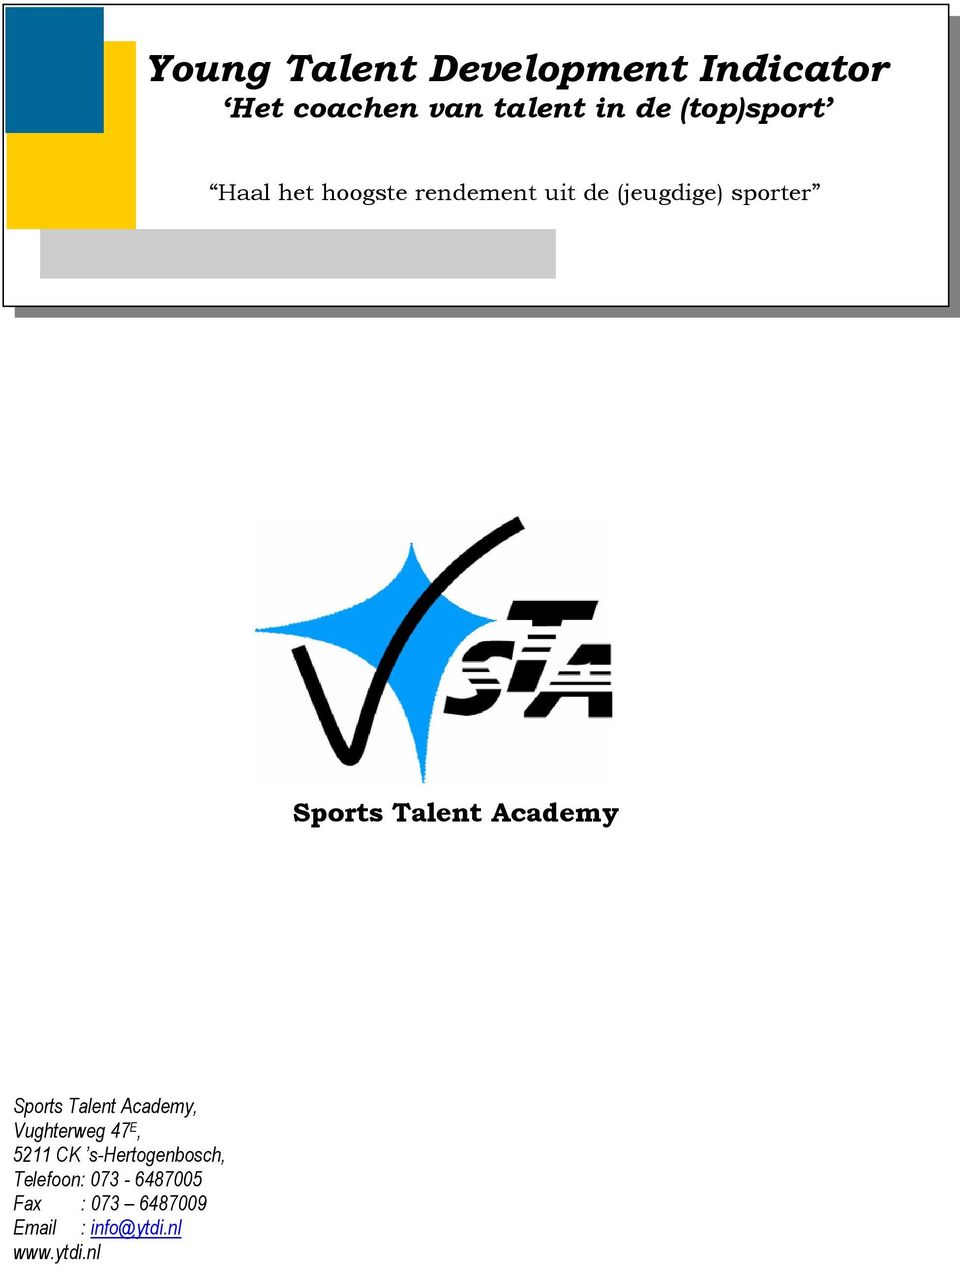 Talent Academy Sports Talent Academy, Vughterweg 47 E, 5211 CK